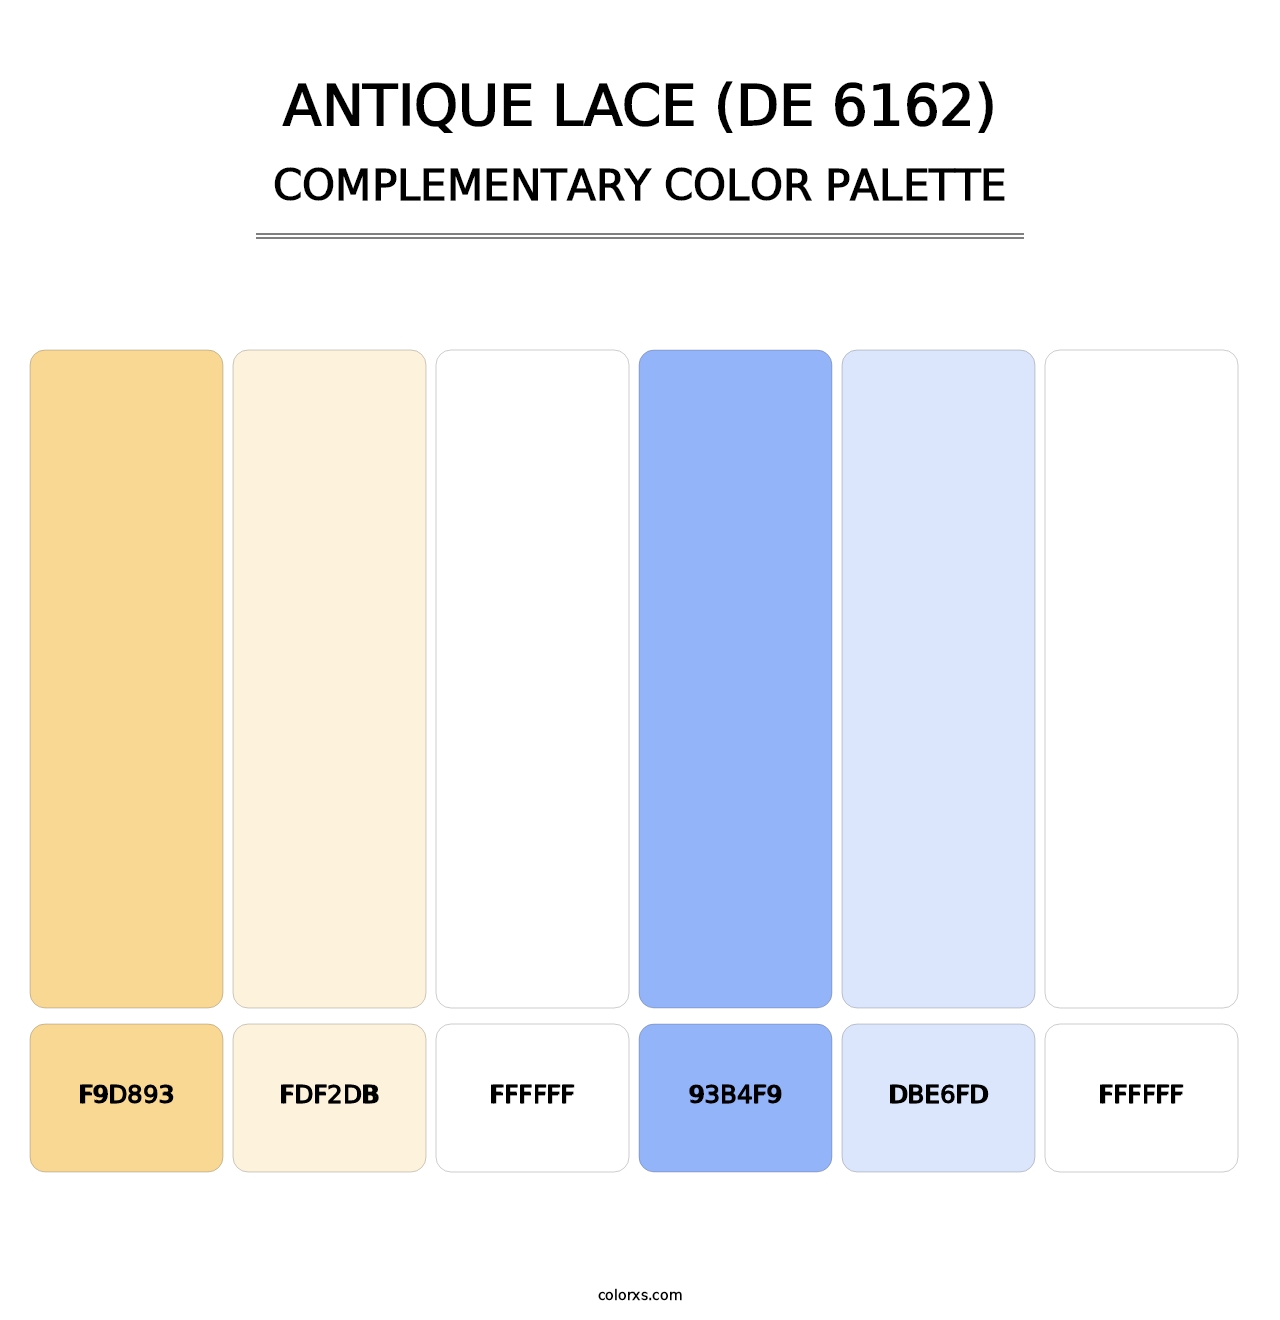 Antique Lace (DE 6162) - Complementary Color Palette